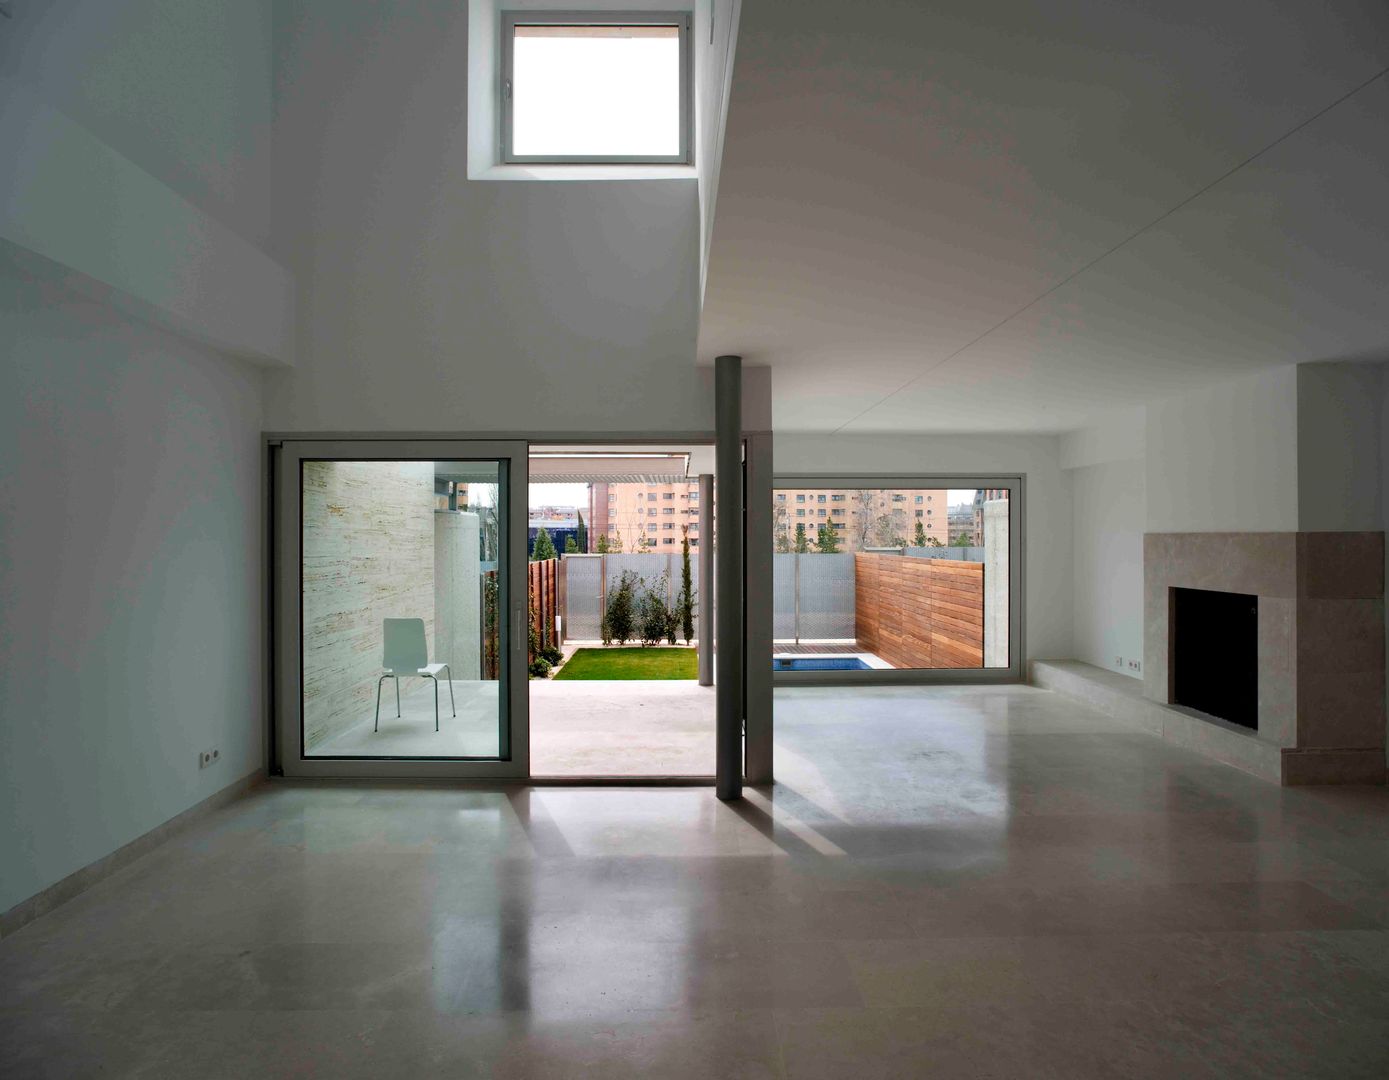 Unifamiliares en Montecarmelo // Madrid, Cano y Escario Arquitectura Cano y Escario Arquitectura Living room Limestone